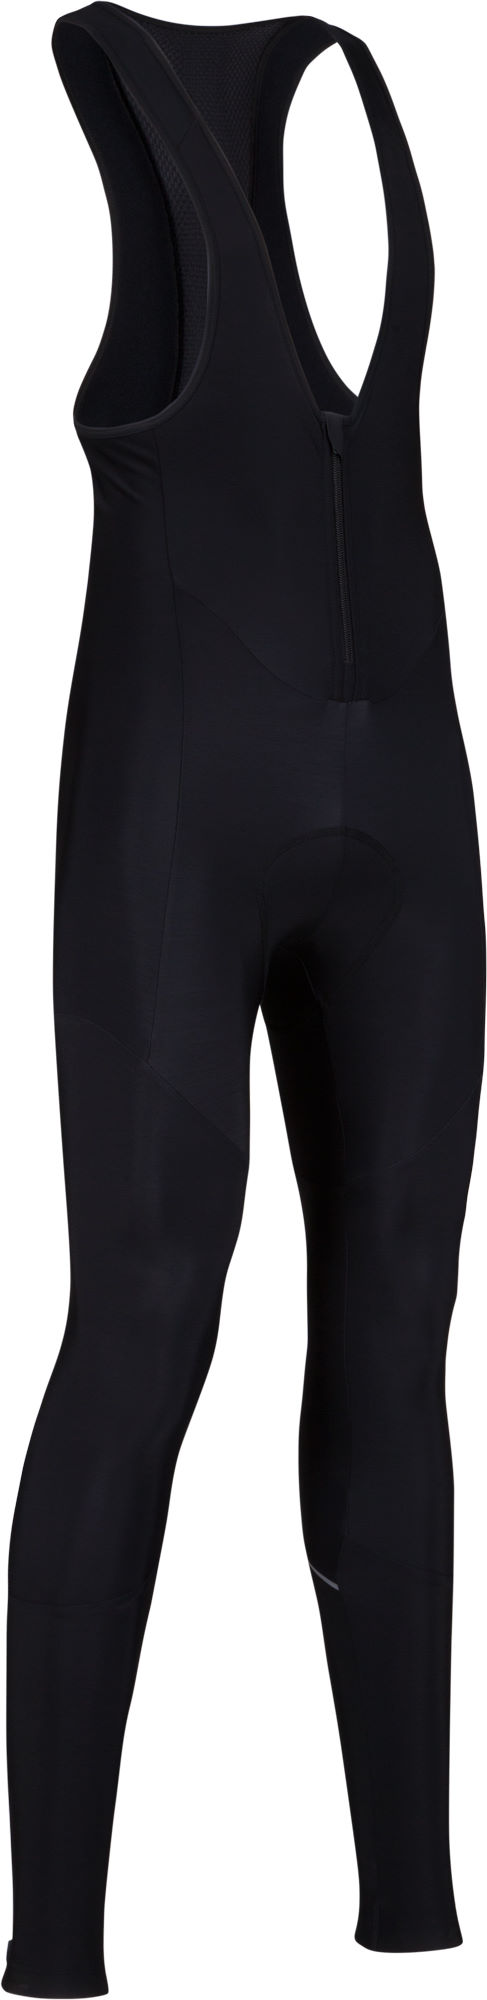 cycling trousers dhb classic thermal bib tights XLGXNTB